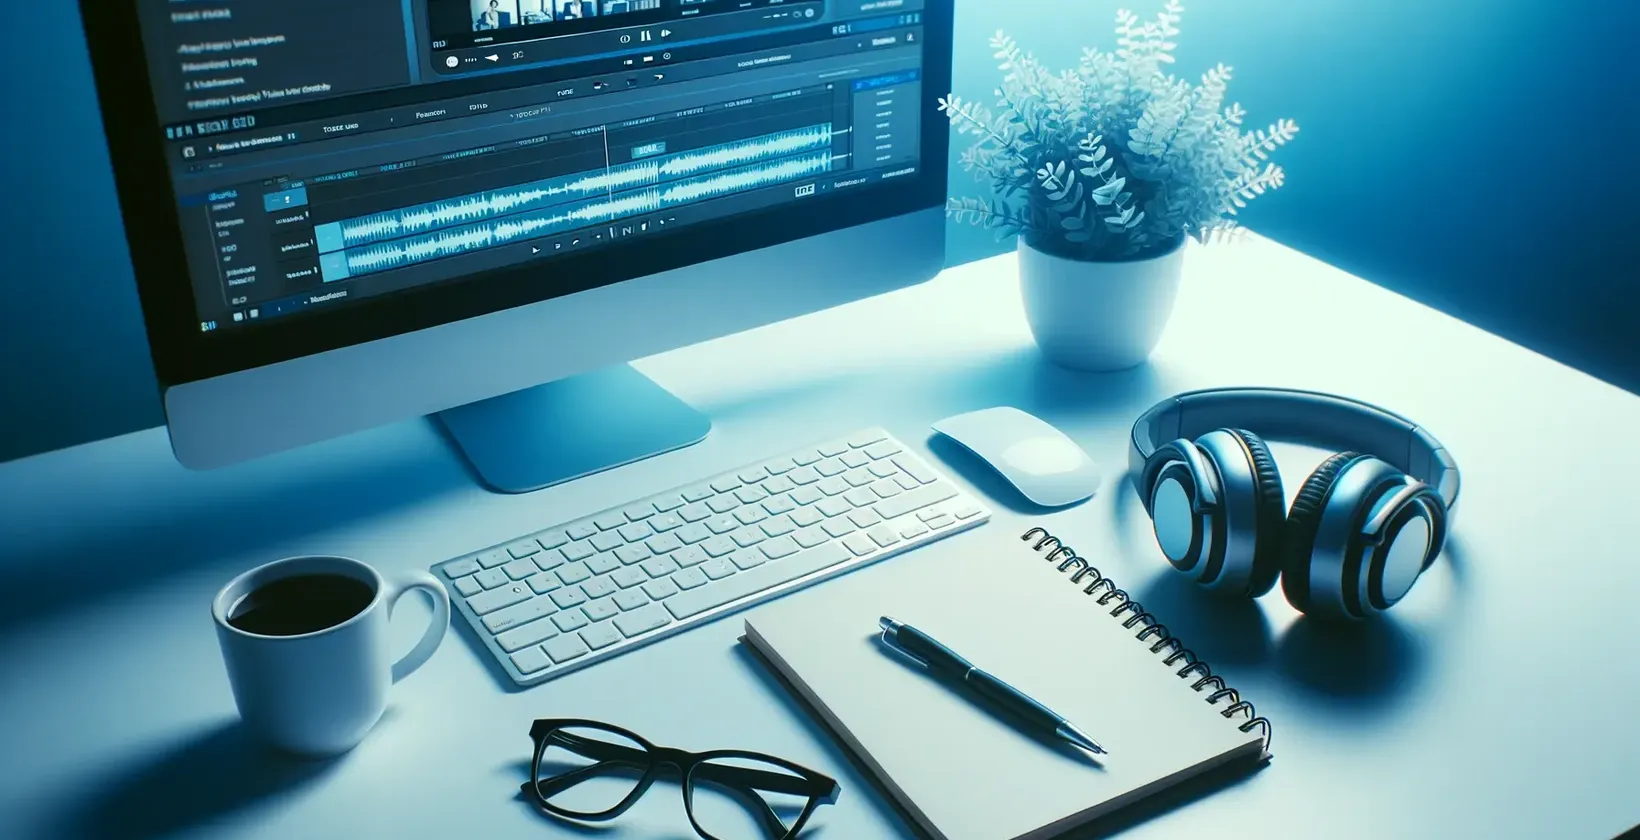 Espaço de trabalho com computador com software de transcrição áudio, auscultadores, bloco de notas, óculos e caneca.